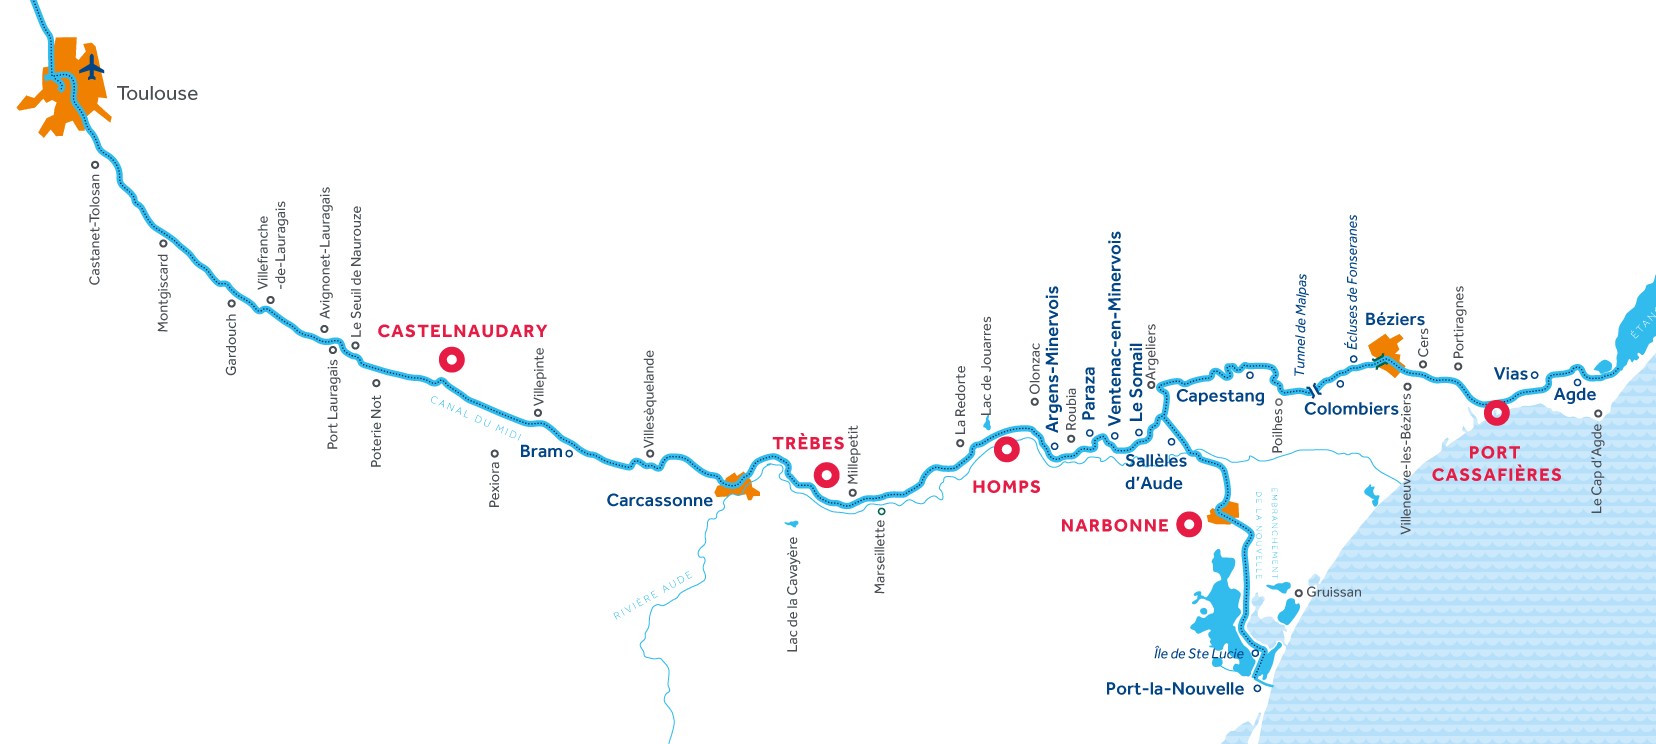 Canal du Midi region map